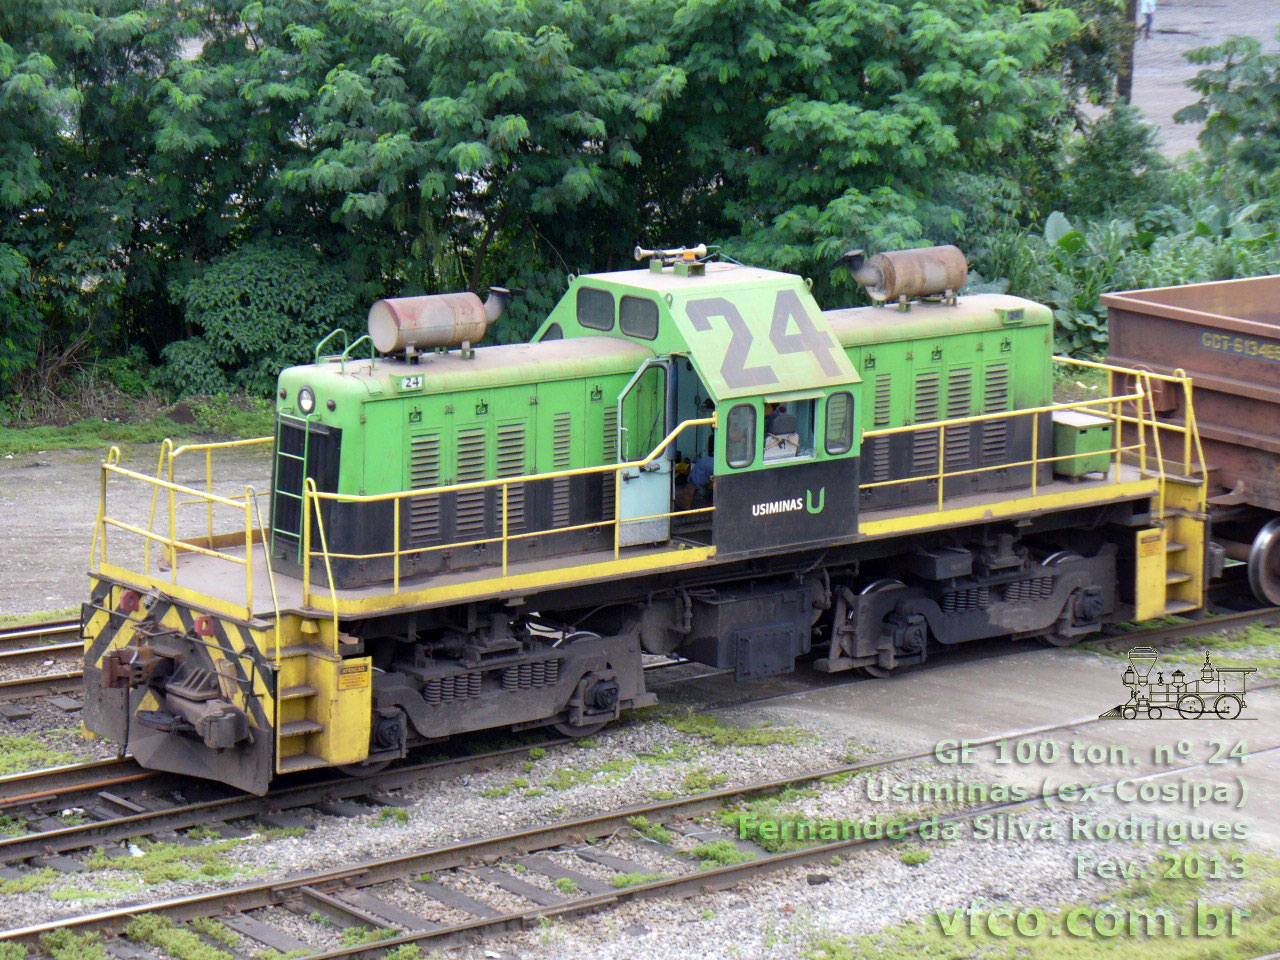 Locomotiva manobreira GE 100 toneladas nº 24 da Usiminas Cubatão (ex-Cosipa) no novo padrão de pintura da siderúrgica